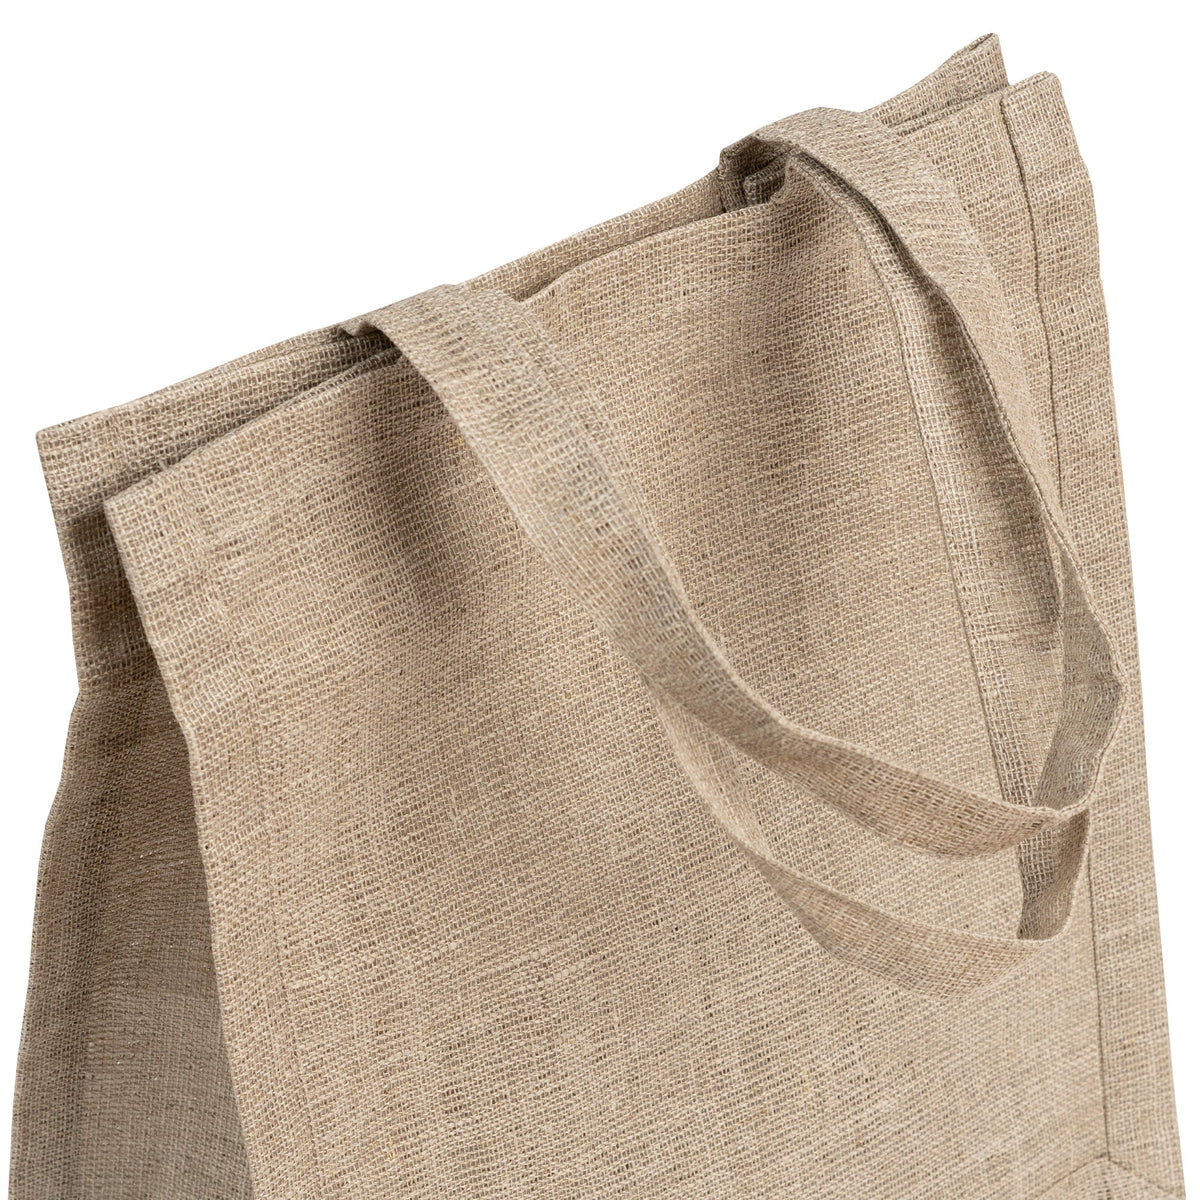 MENIQUE Rigid 100% Linen Tote Bag